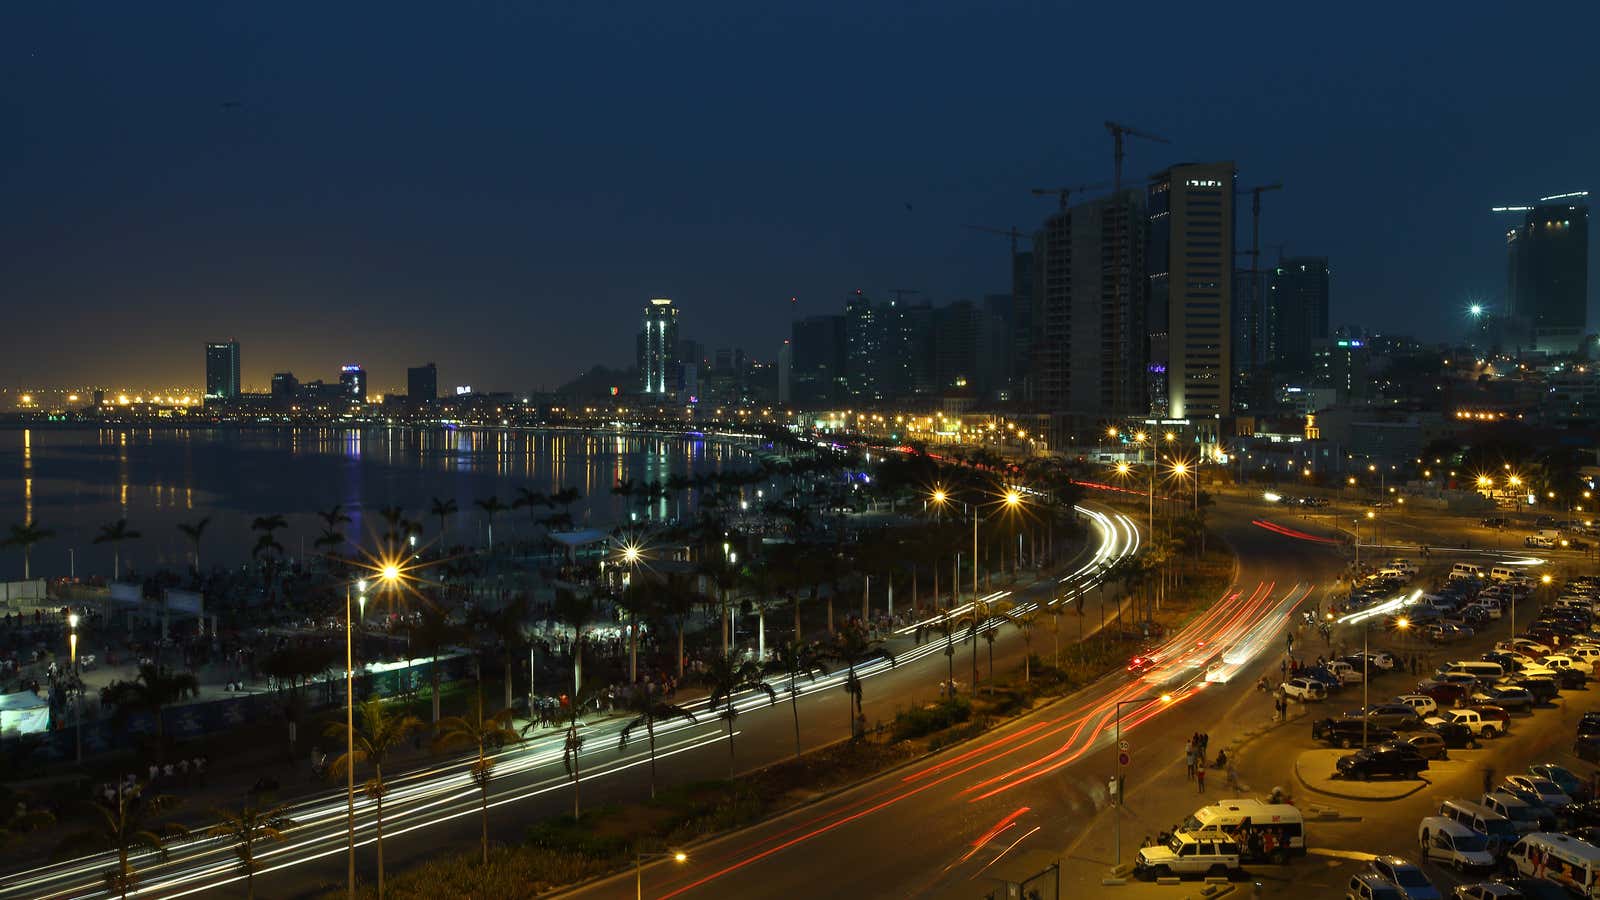 Luanda, the capital of Angola.